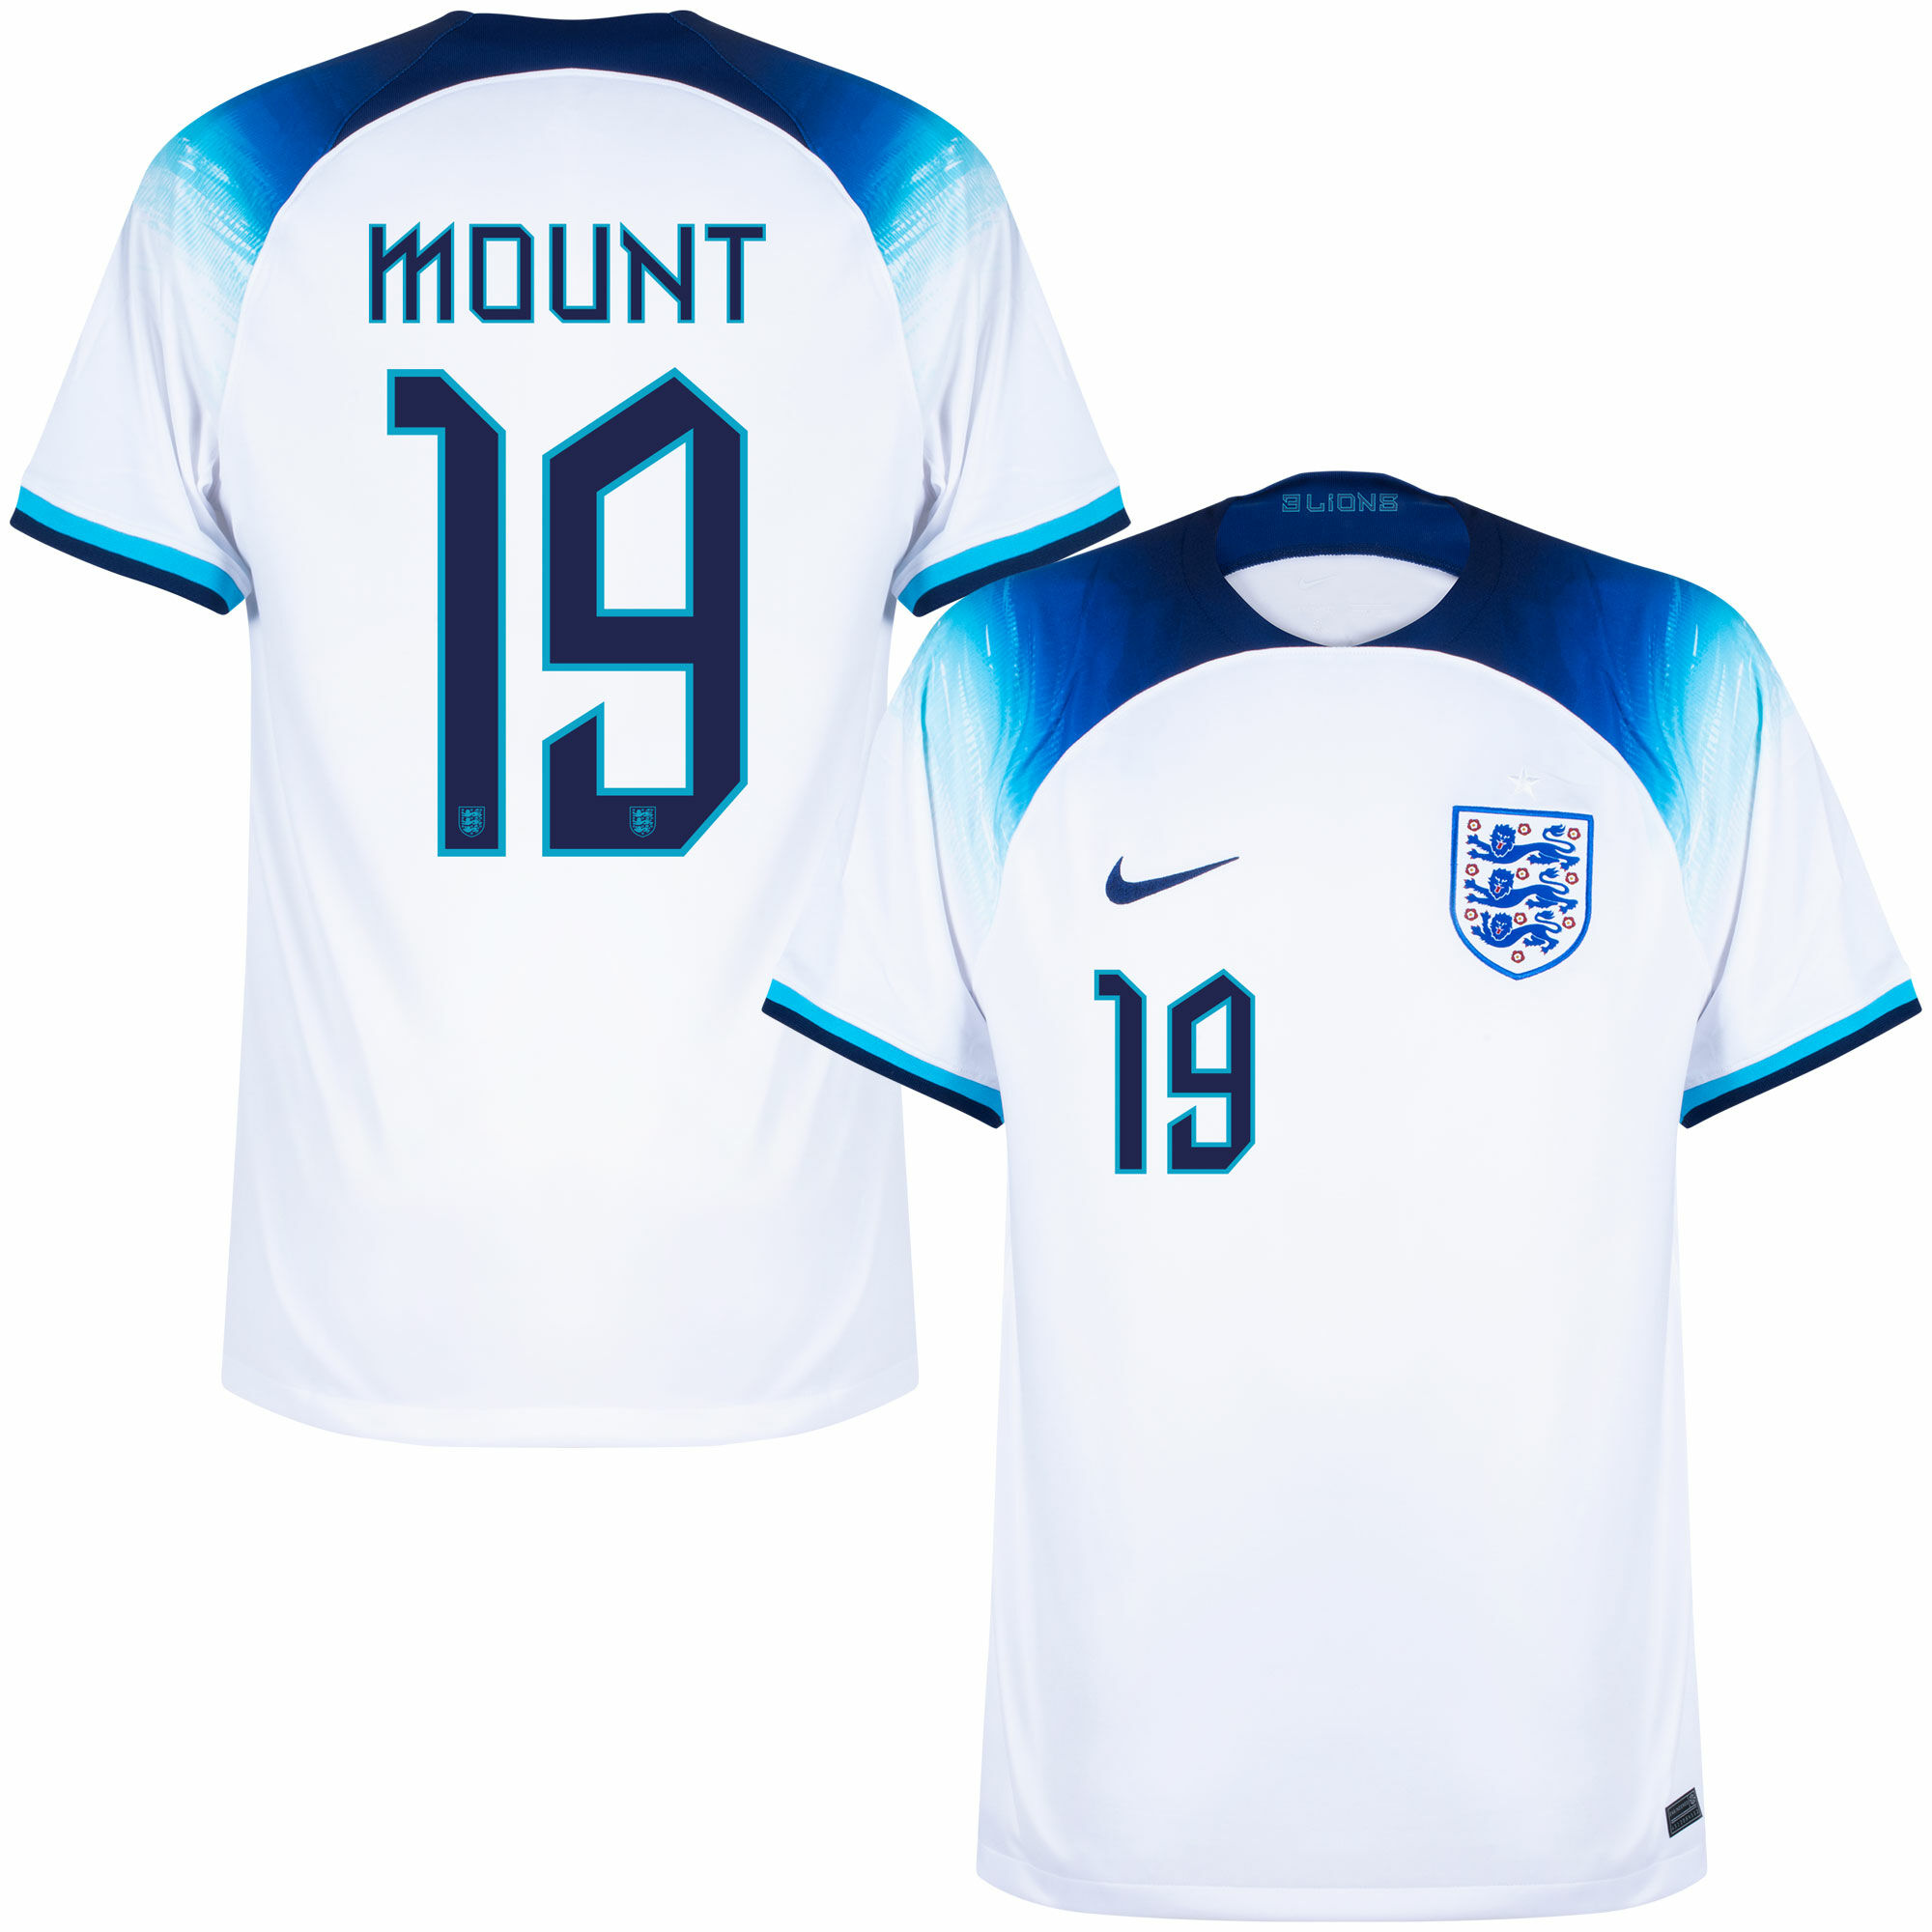 Anglie - Dres fotbalový - Mason Mount, číslo 19, oficiální potisk, domácí, bílý, sezóna 2022/23